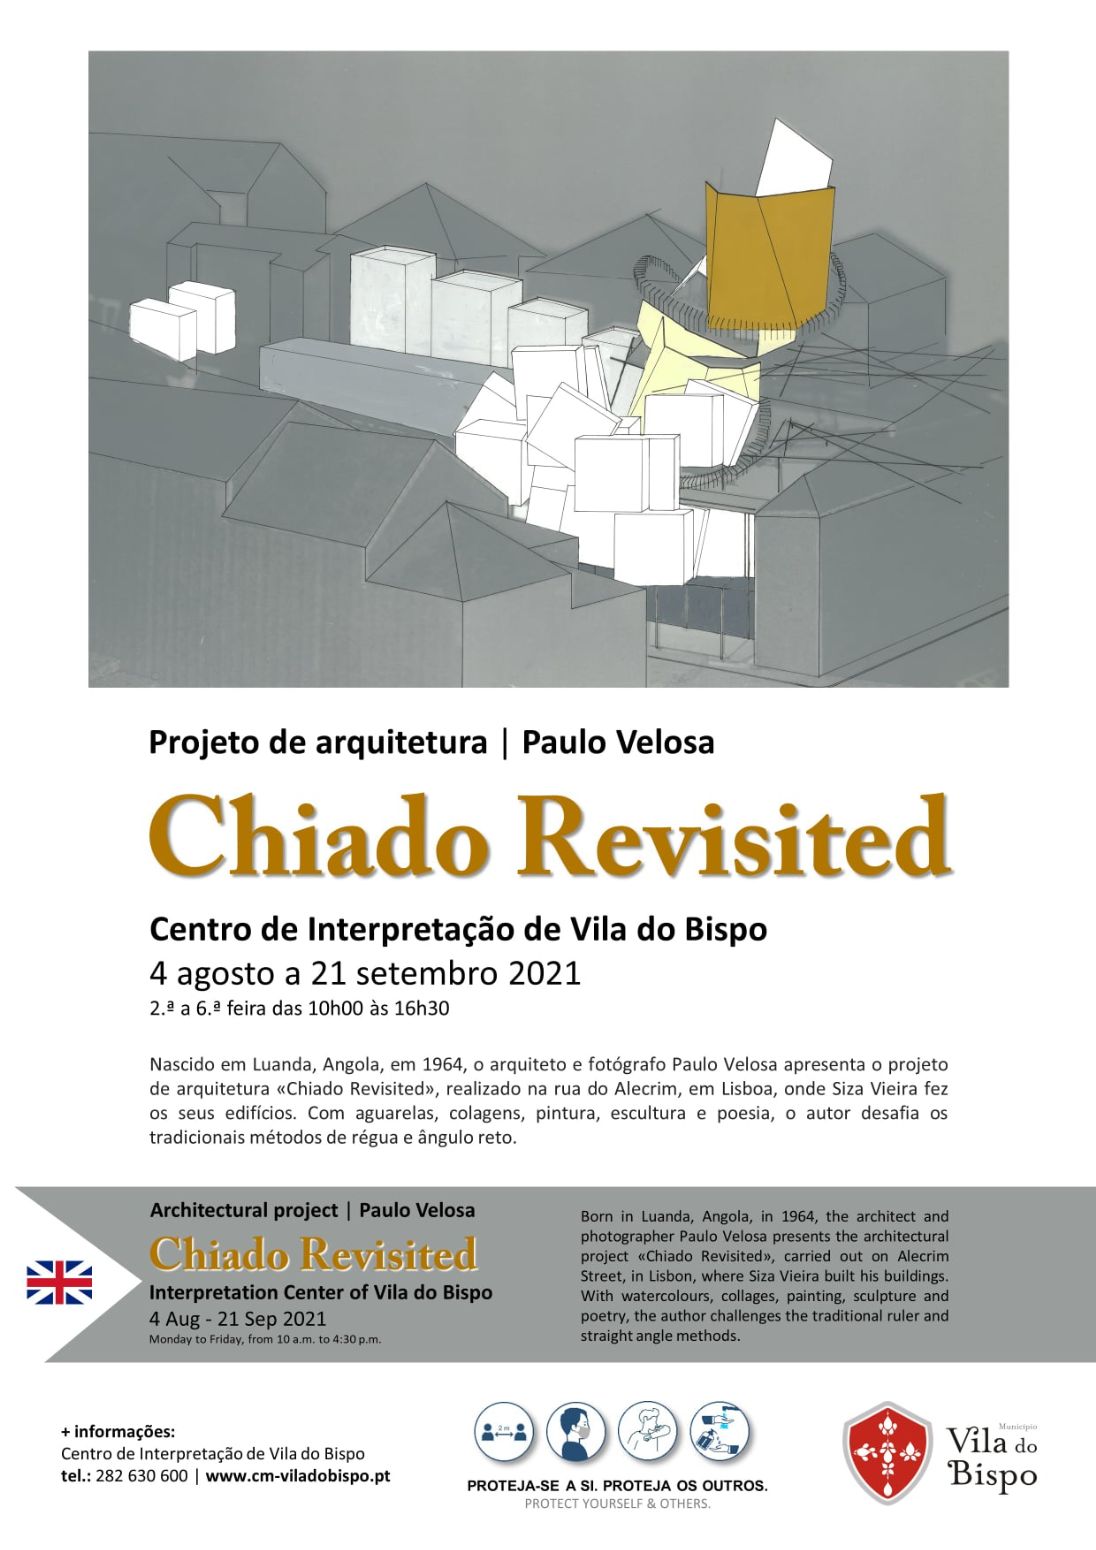 Exposição "Chiado Revisited" no Centro de Interpretação de Vila do Bispo